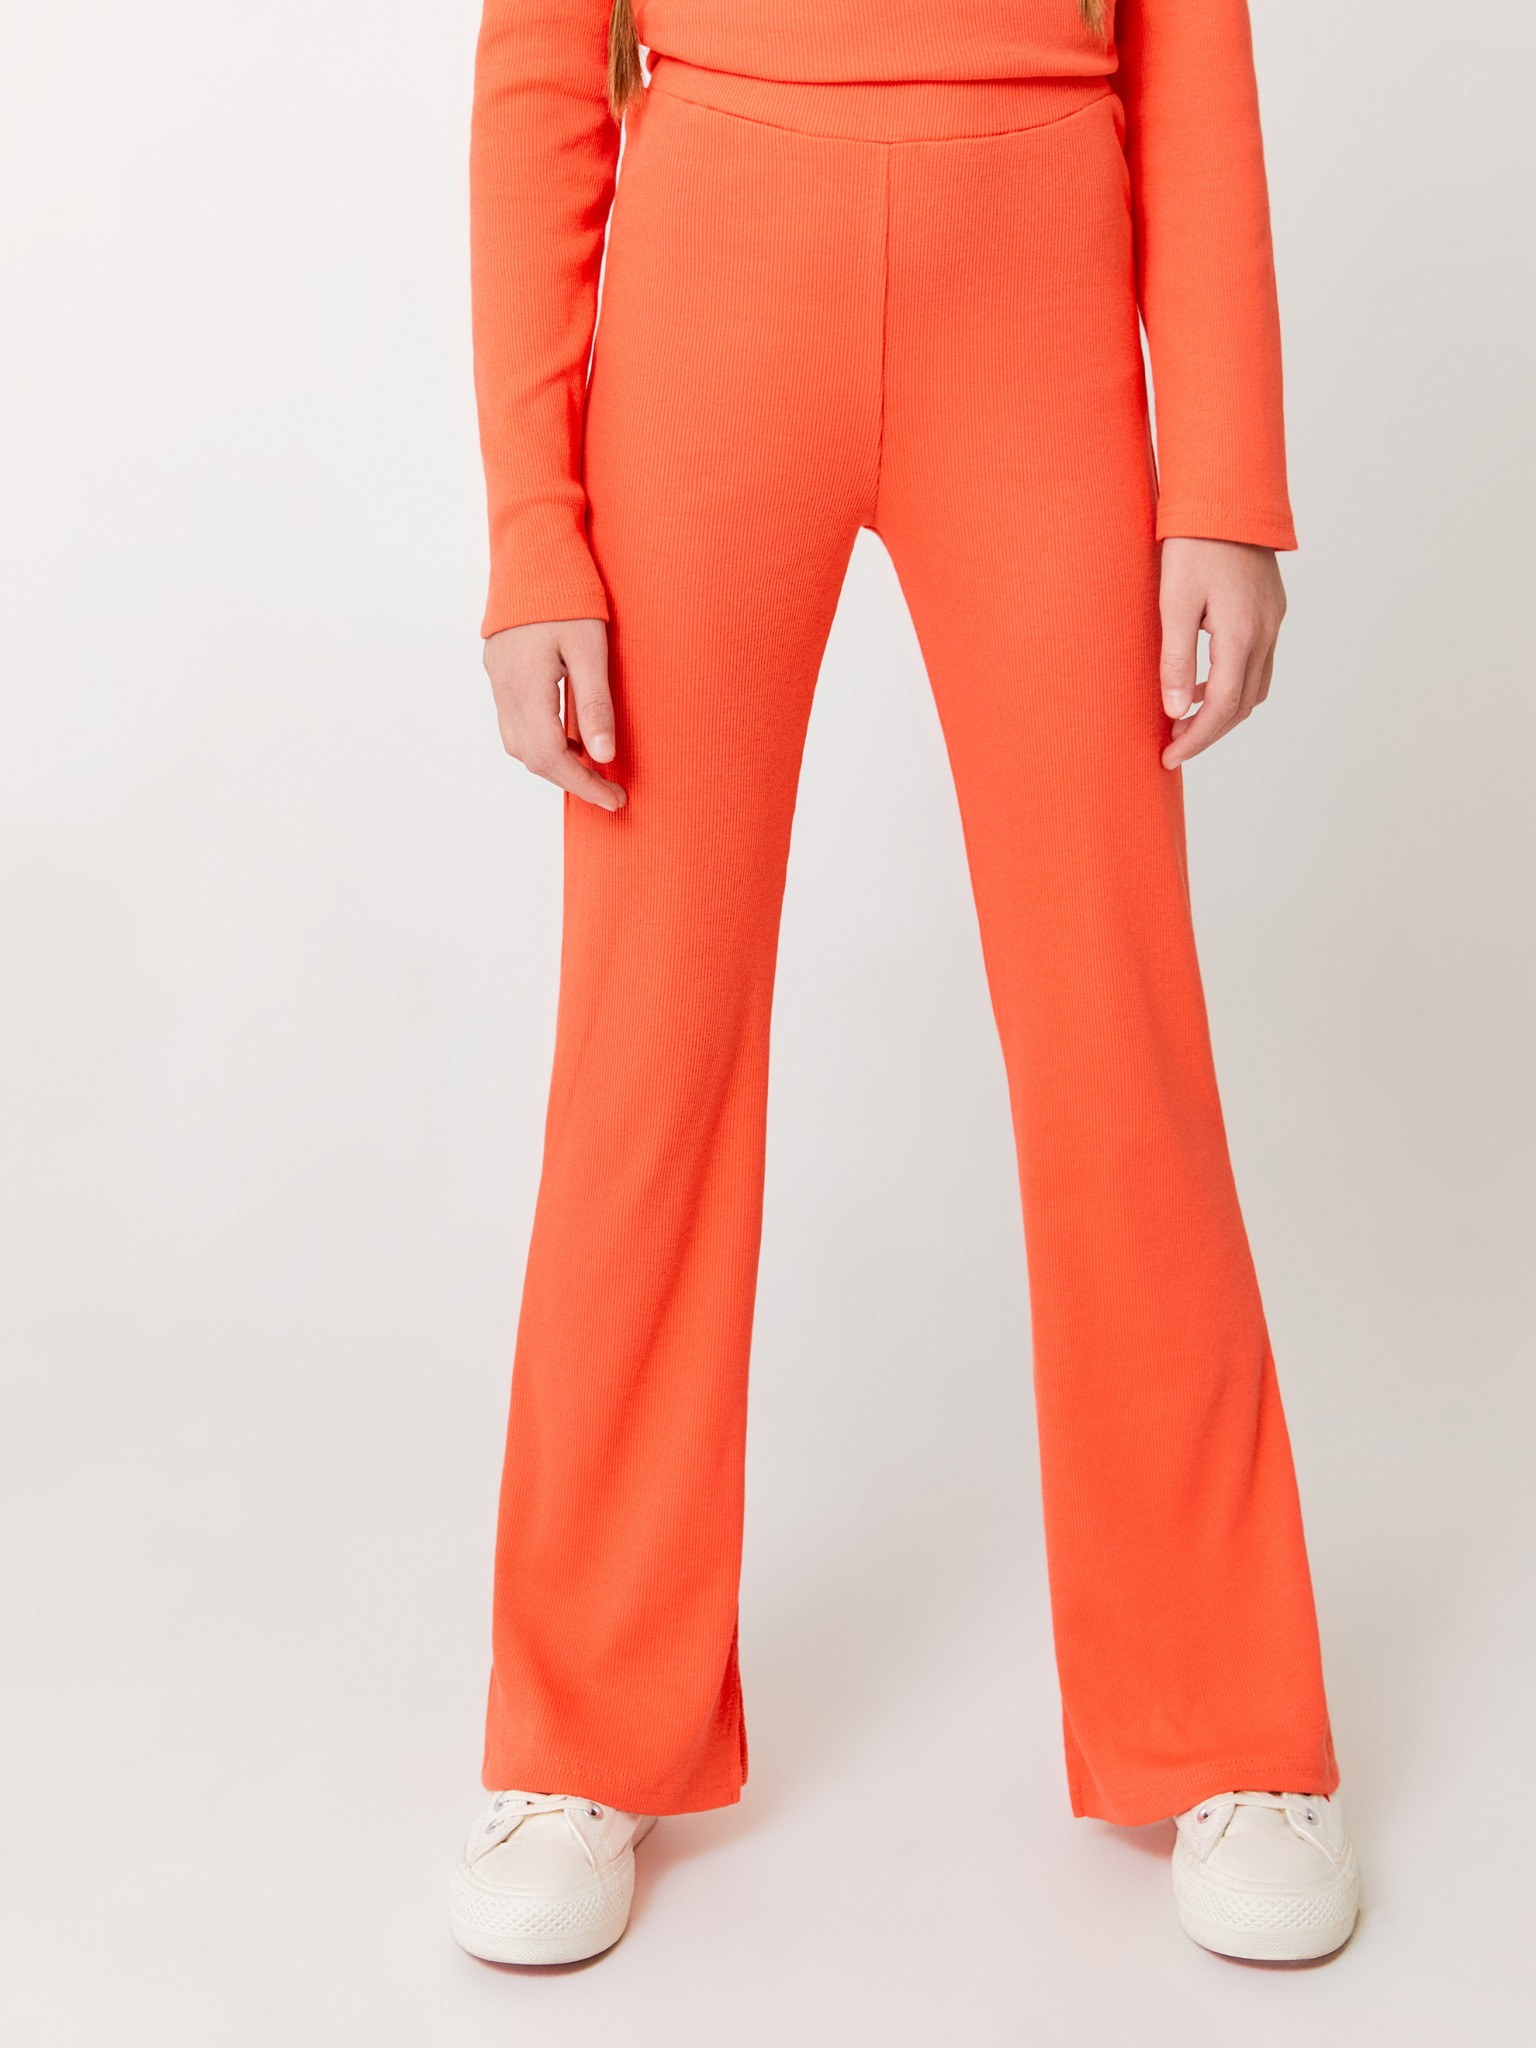 Брюки в рубчик ACOOLA 20200160011, оранжевый, 140 термокомплект для мальчиков playtoday брюки толстовка оранжевый 140 146